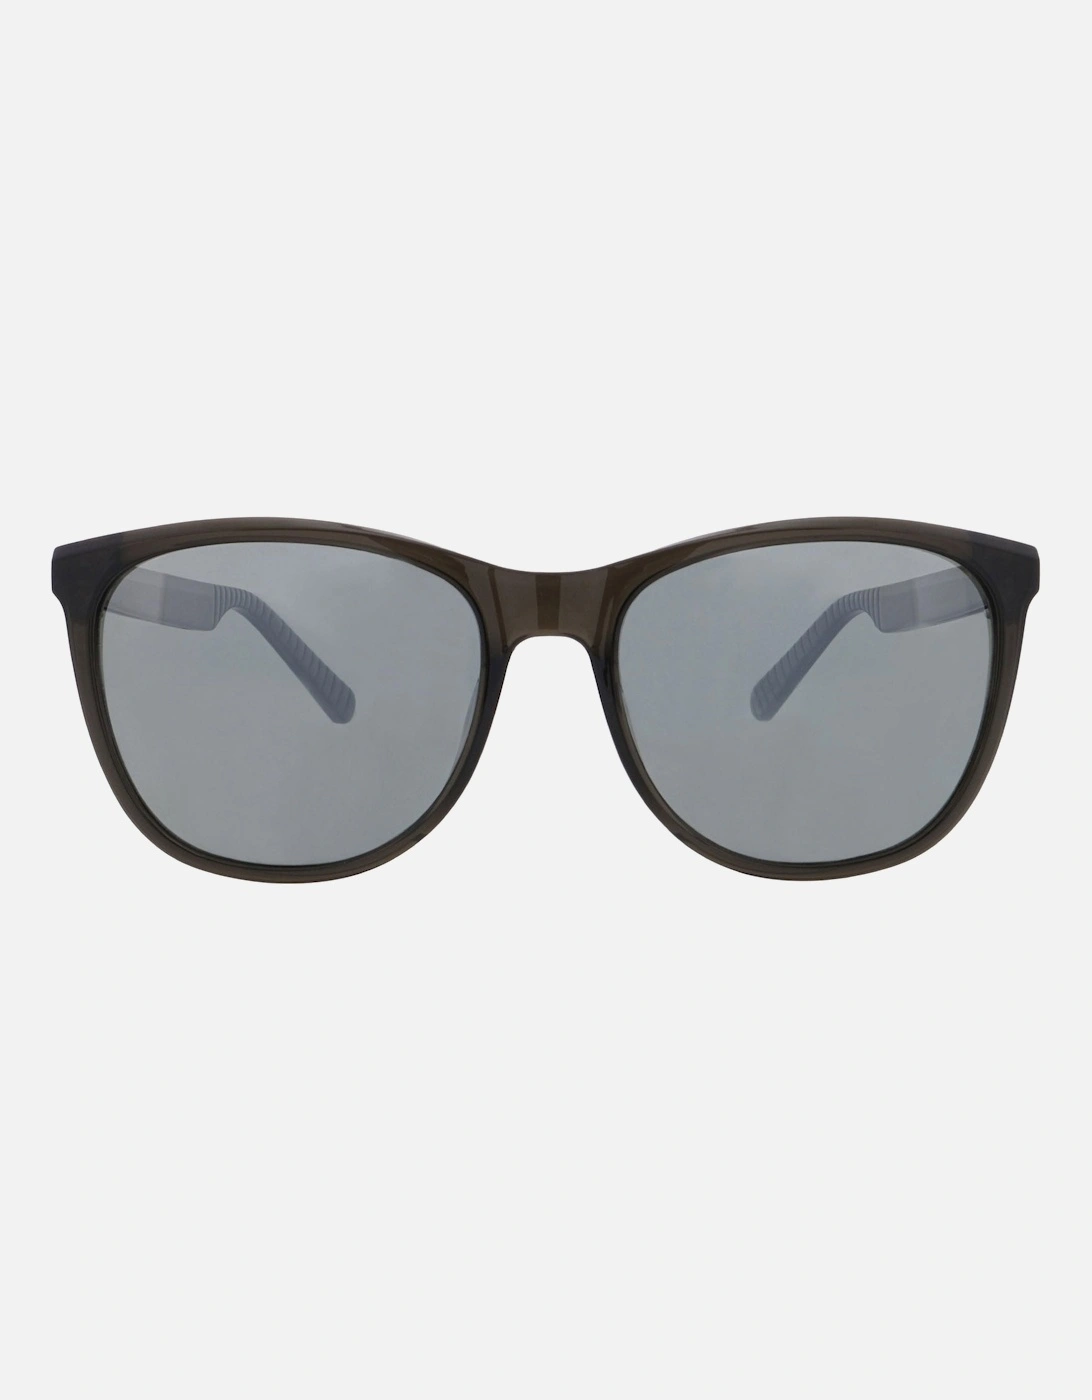 Fly Womens Polarized Anti-Reflective Sunglasses - Shiny Clear, 3 of 2